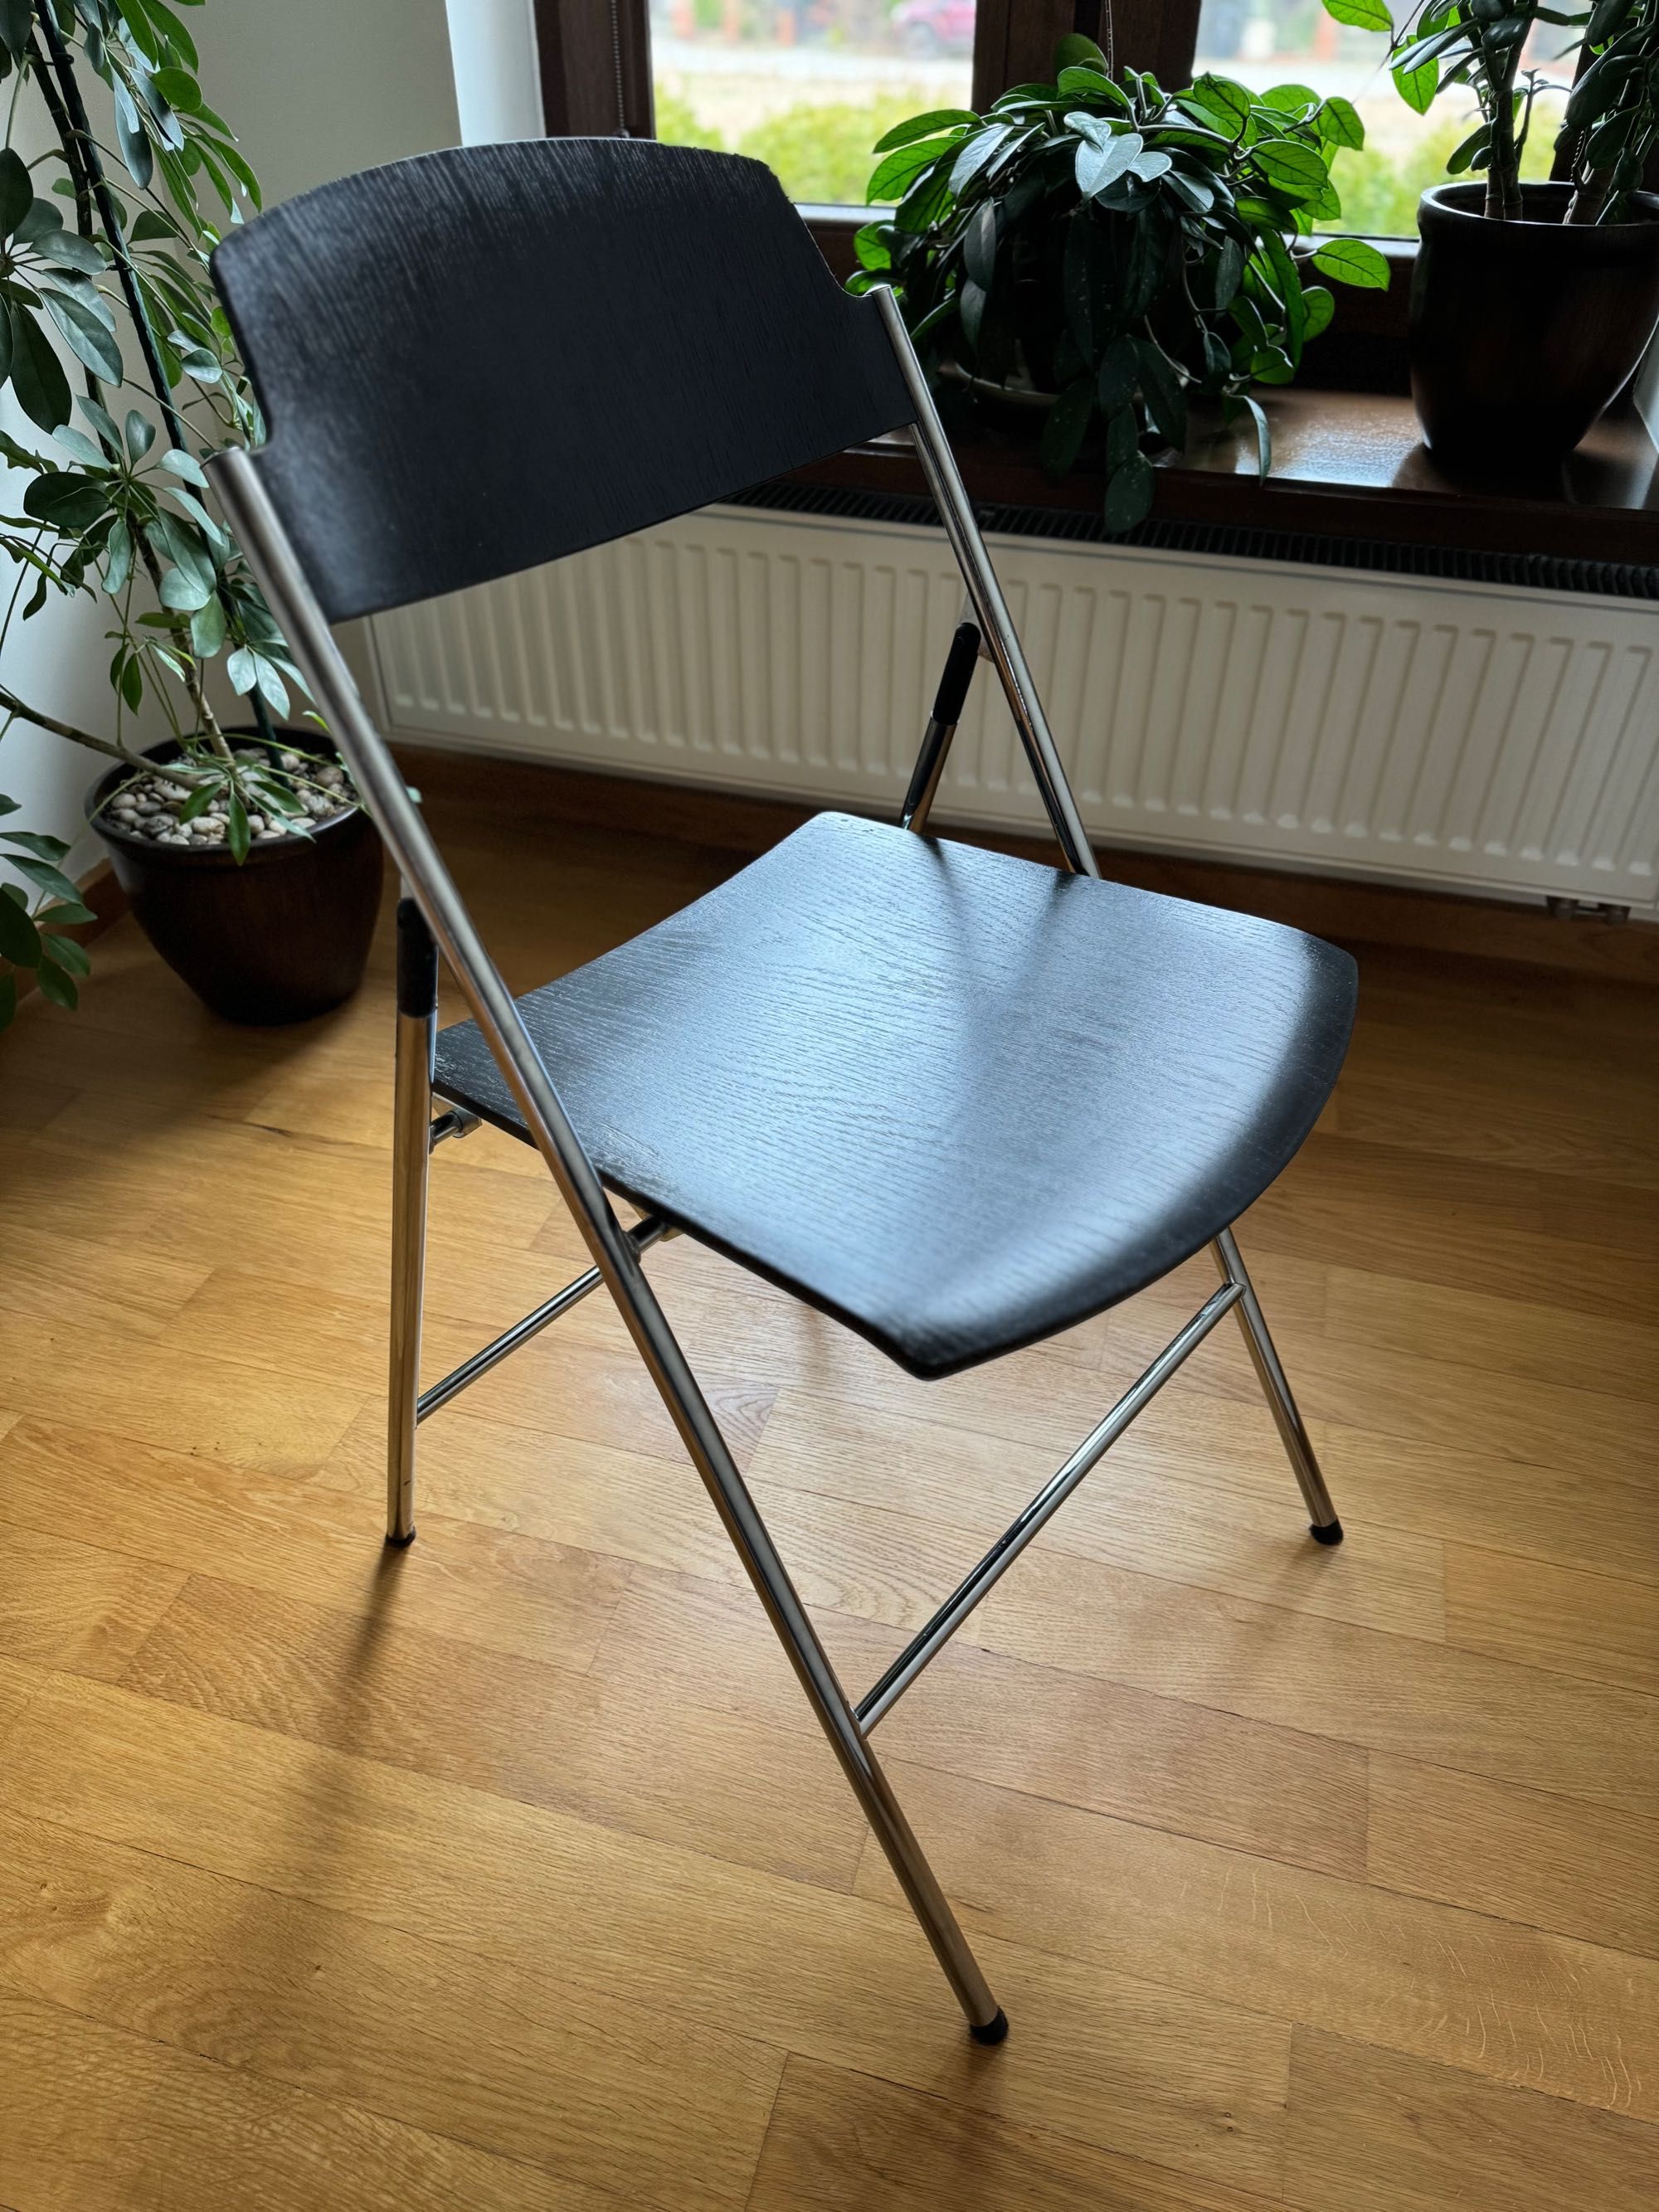 12 Krzeseł IKEA EDGAR - okleina dębowa/stal, chromowana powłoka